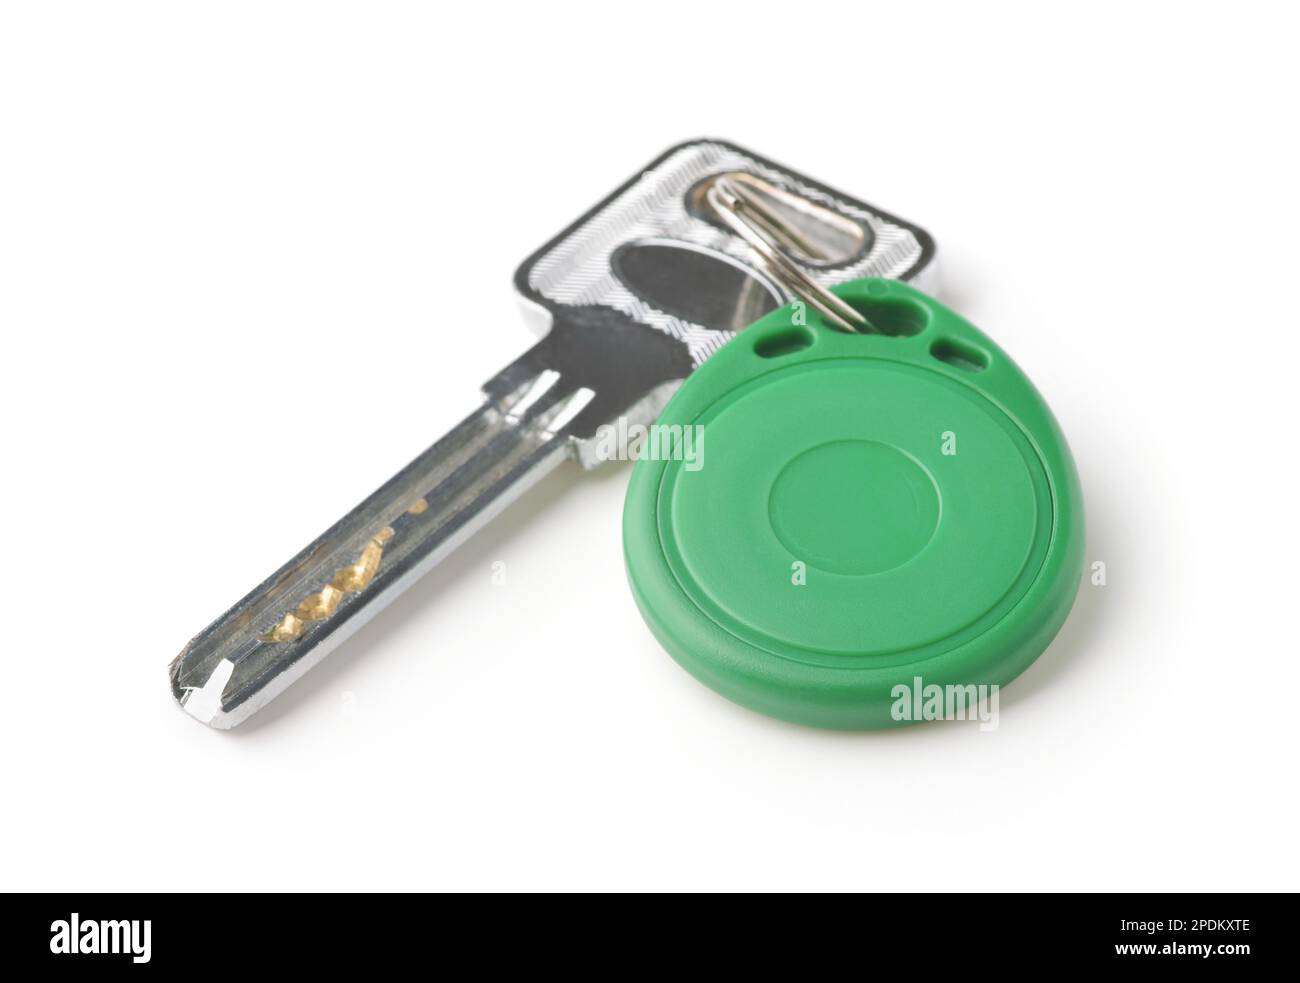 Schlüssel mit grünem Kunststoff-rfid-Schlüsselanhänger isoliert auf weiß Stockfoto